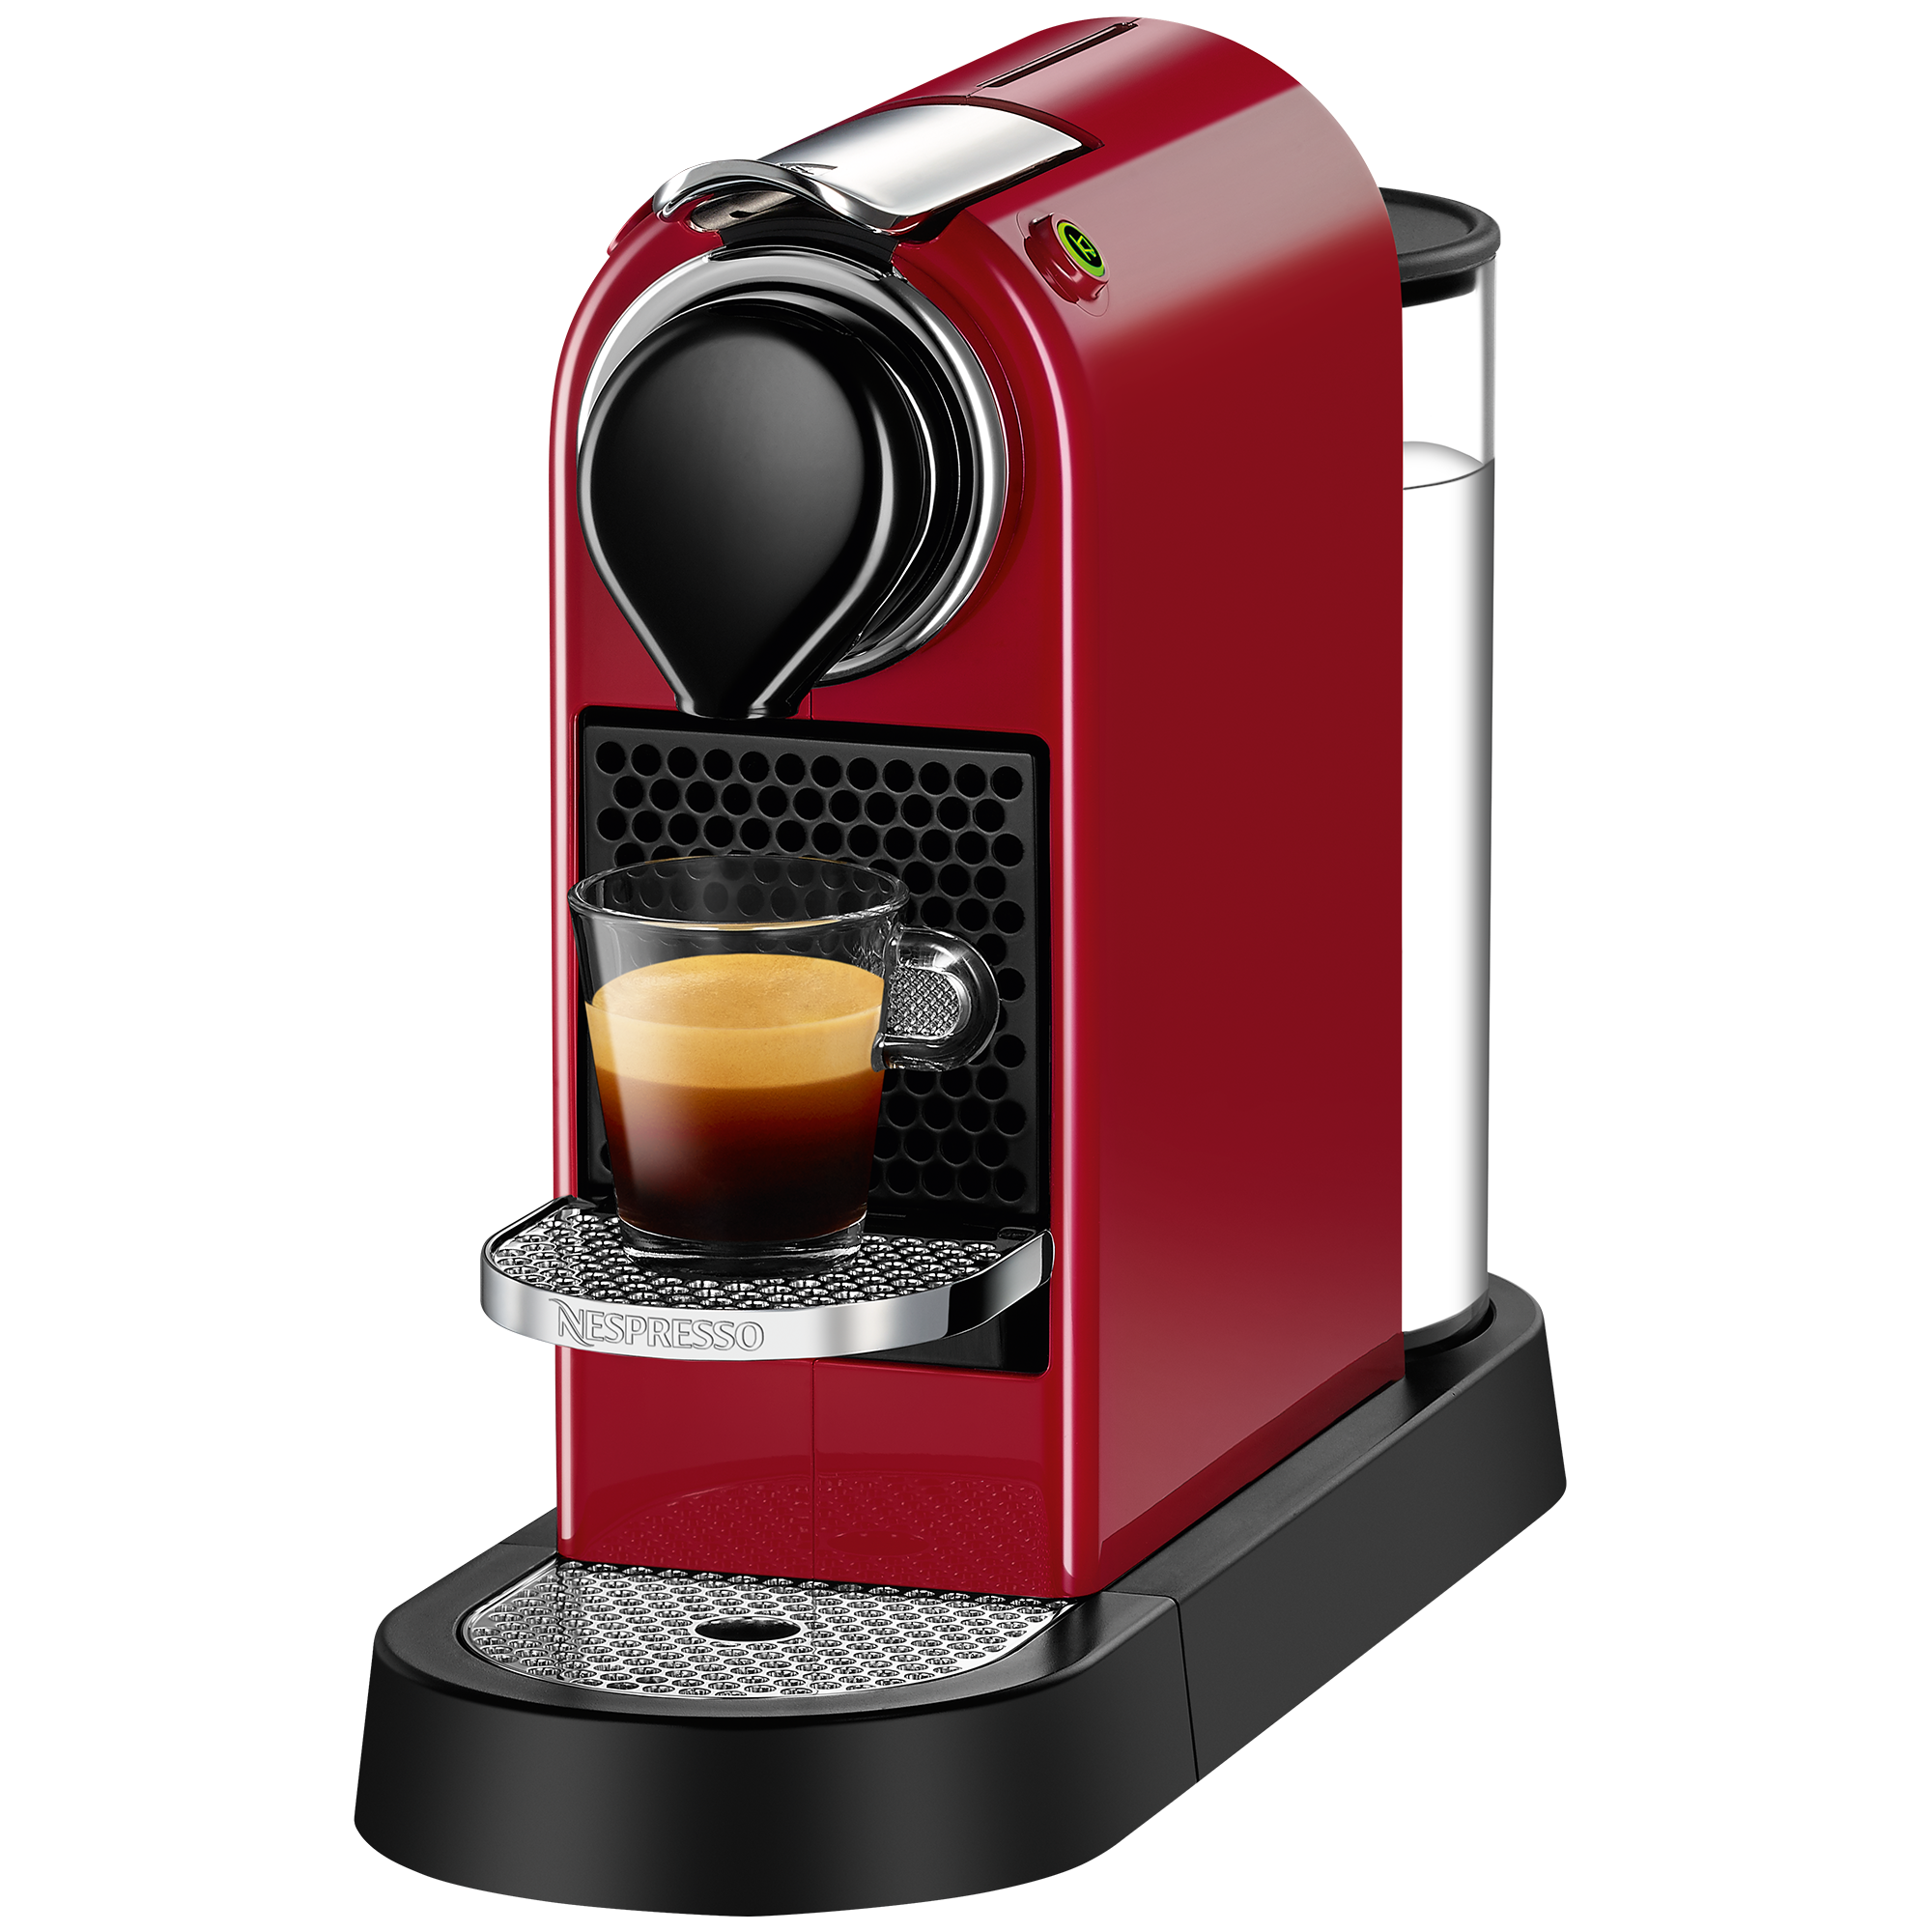 Machine à café Expresso à capsule CITIZ C113 – Rouge – Virgin